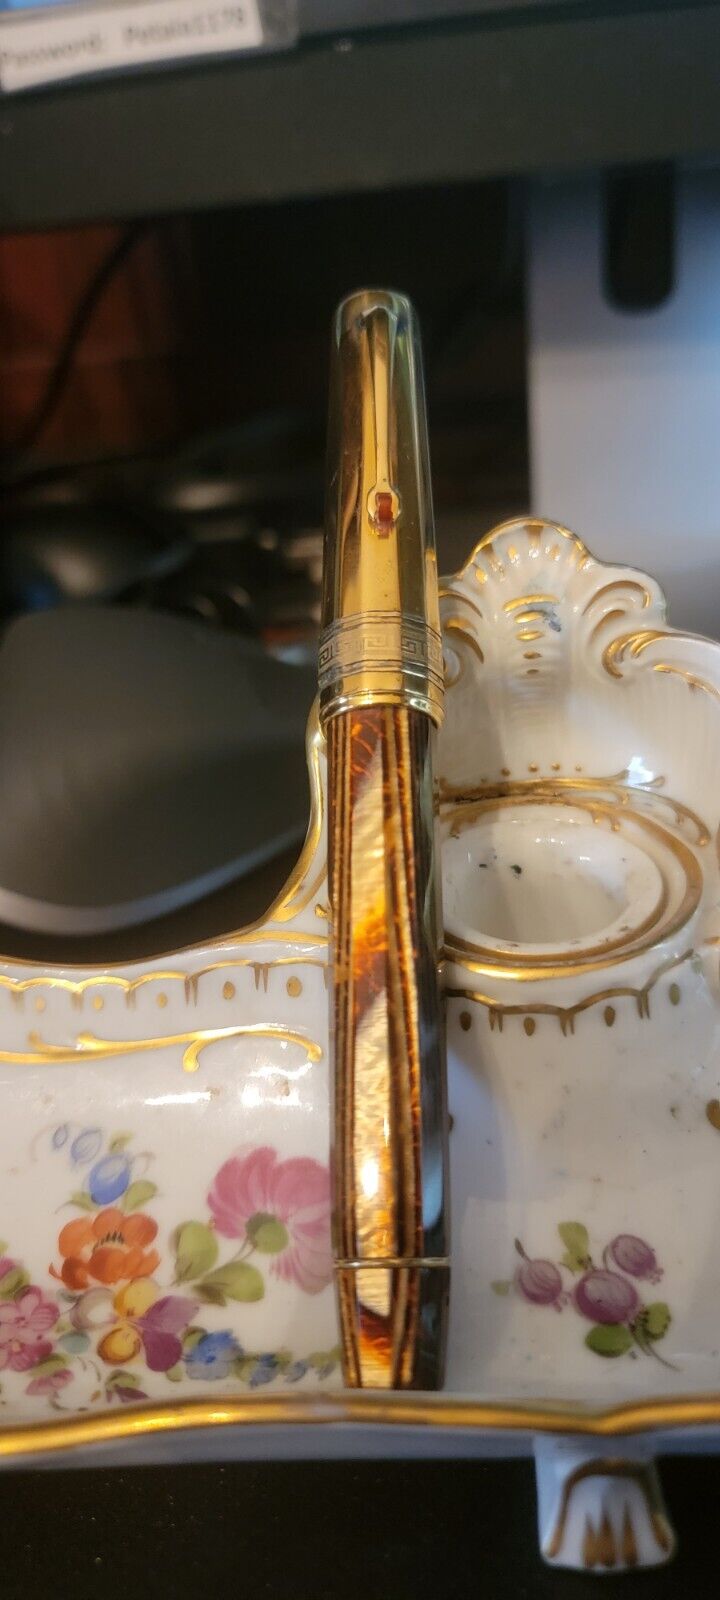 Rare Omas Paragon Arco Celluloid Fountain Pen With Gold Cap 18K M Nib